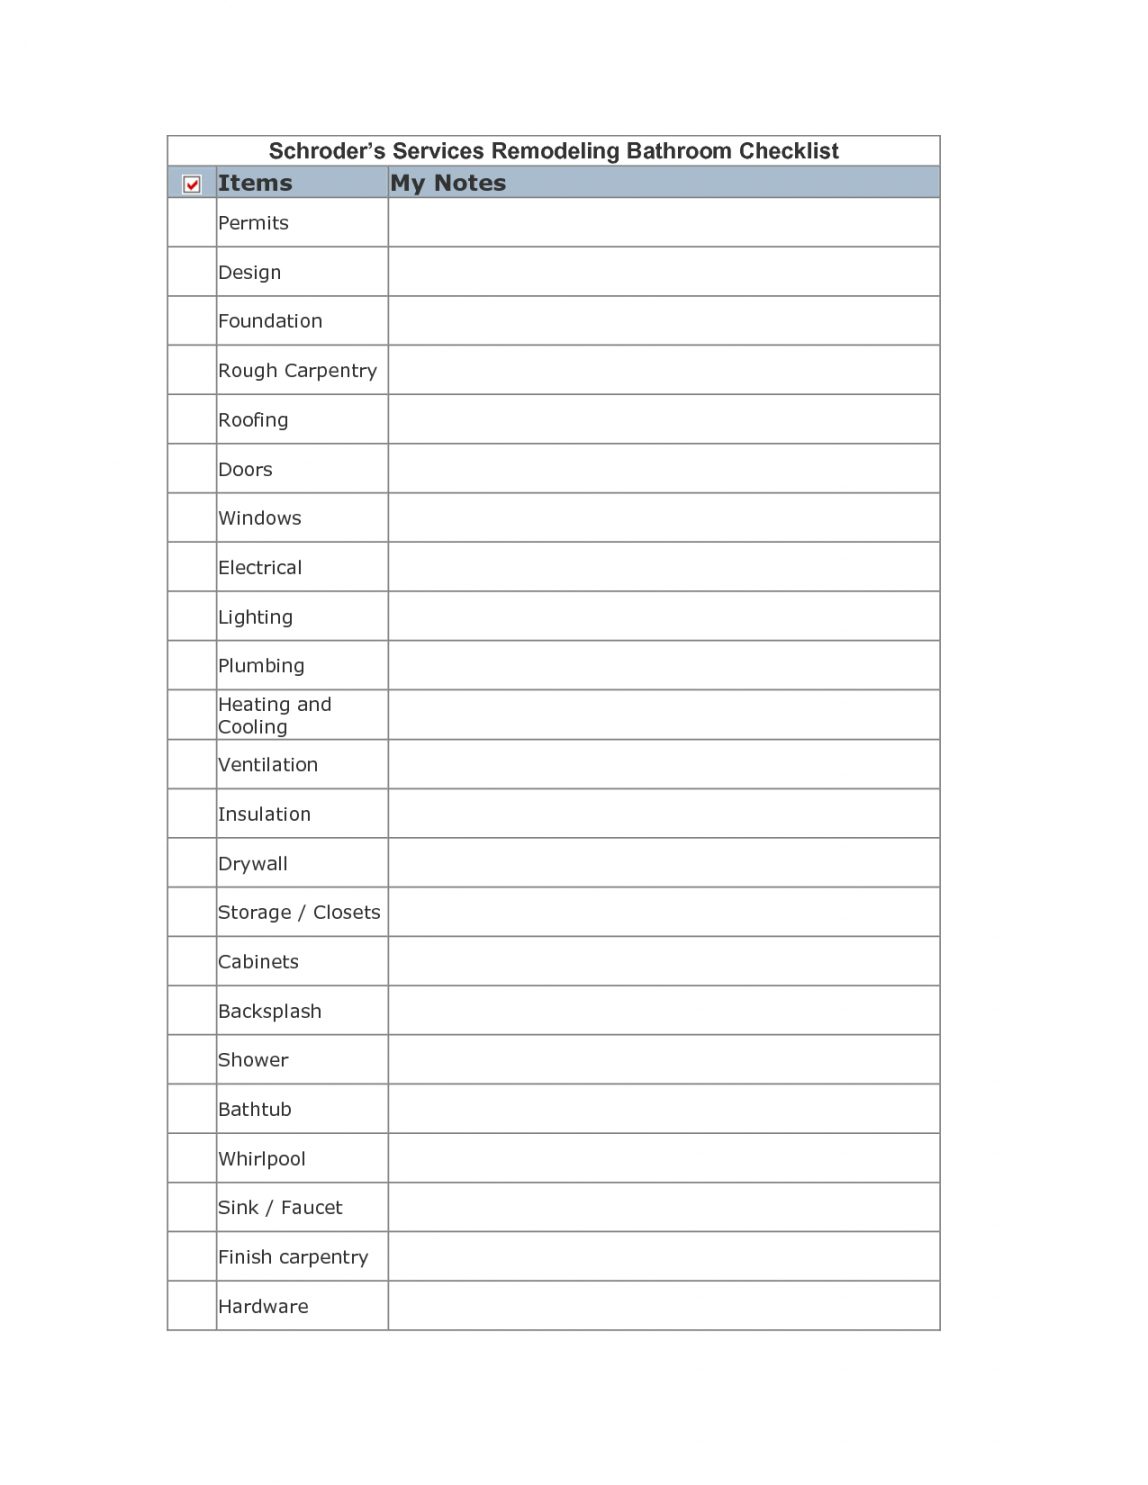 kitchen remodel checklist   checklisttemplatebathroomremodel home remodel checklist template samples